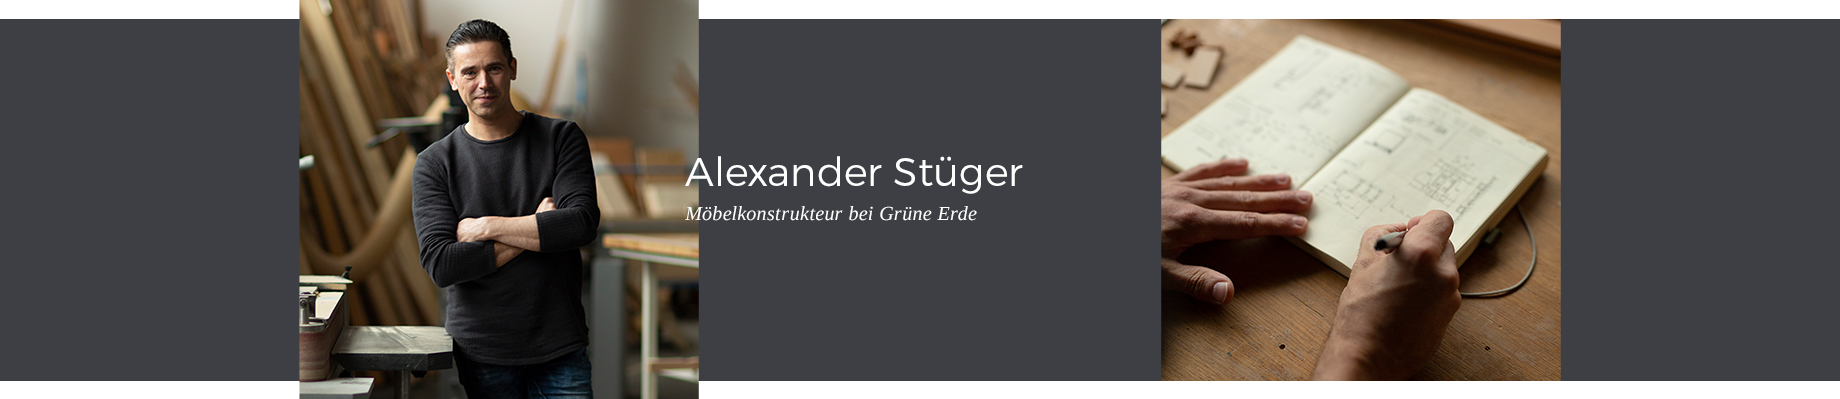 Alexander Stüger ist Möbelkonstrukteur bei Grüne Erde, und damit ein wichtiger Verbindungsmann zwischen Design und Fertigung.